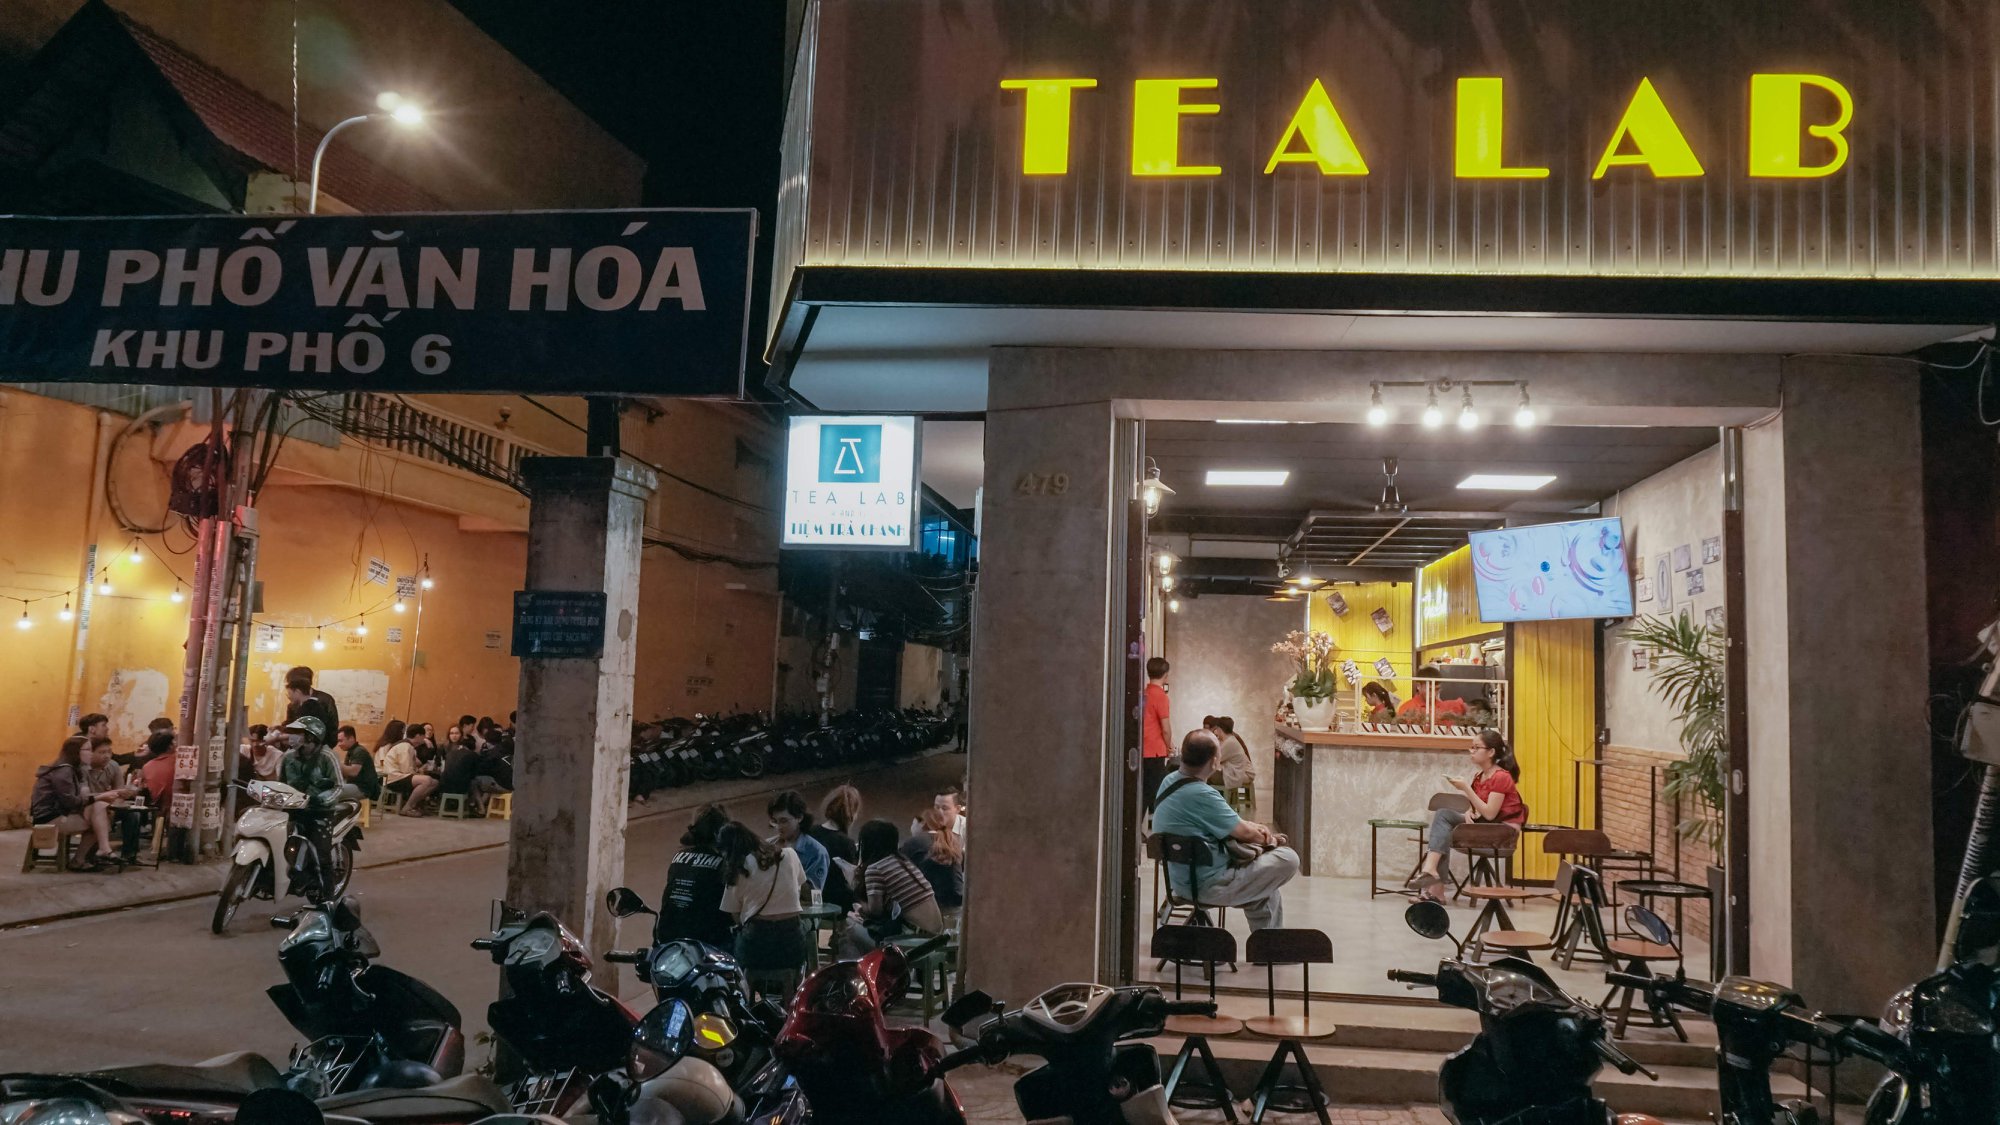 Hẹn hò Sài Gòn: "Đổi gió" với không gian lạ lẫm của cà phê phong cách đường phố - 1